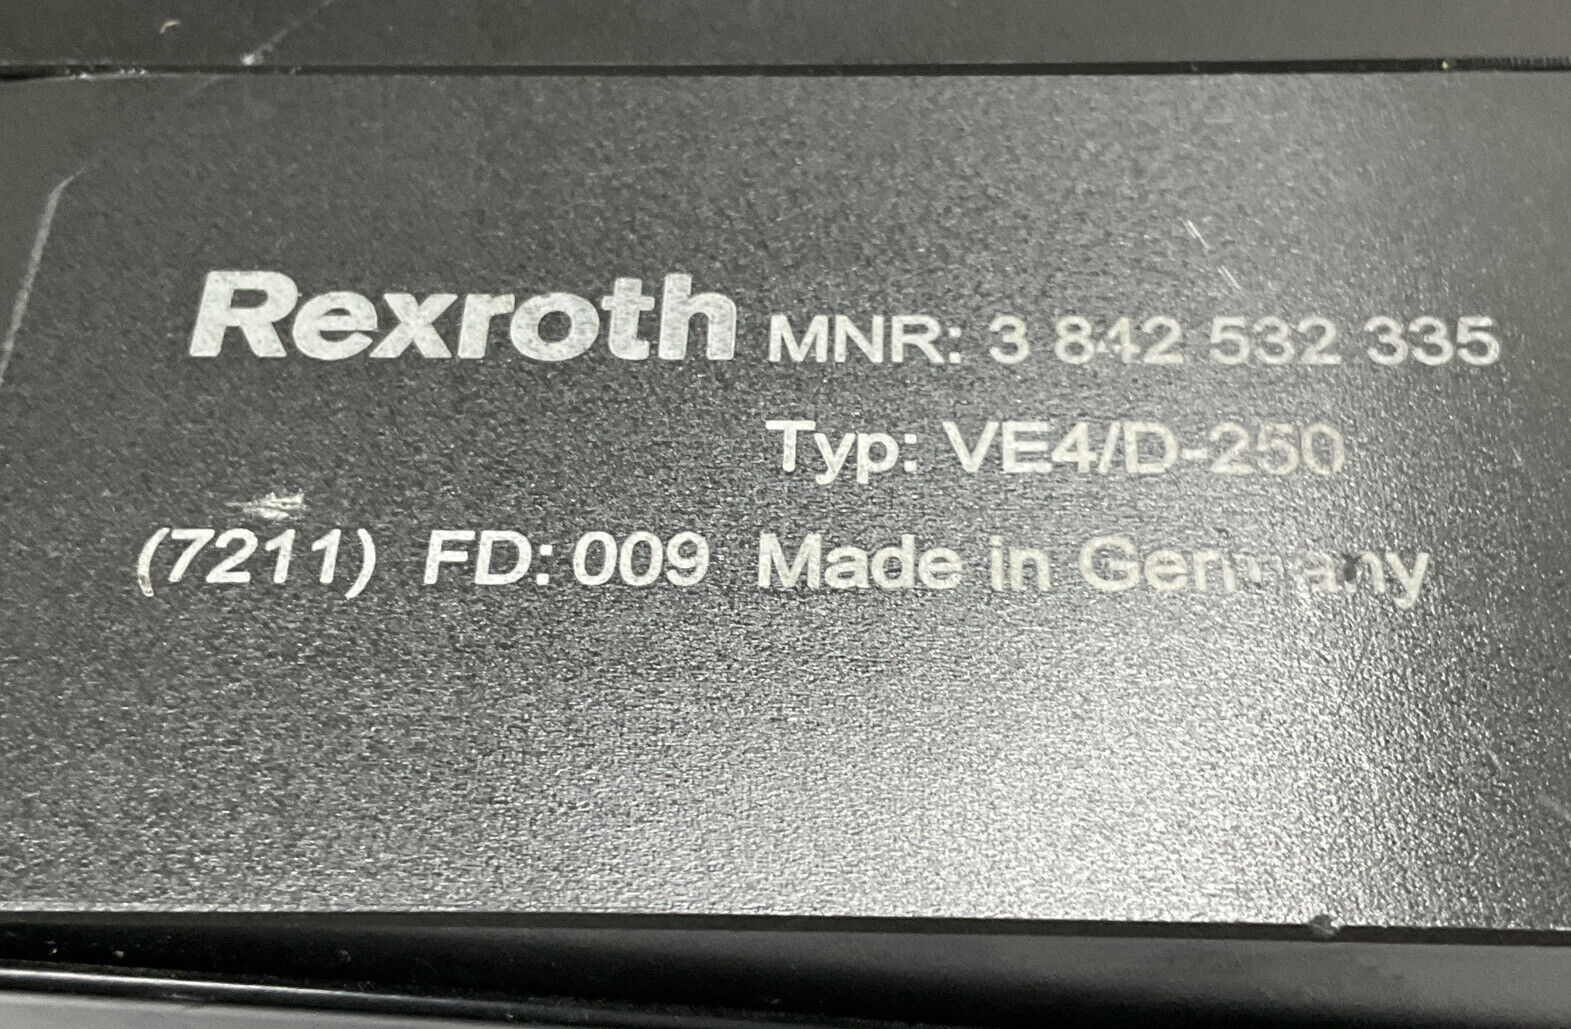 Bosch Rexroth 3-842-532-335 / VE2/D250 Pneumatic Stop Gate (CL297)